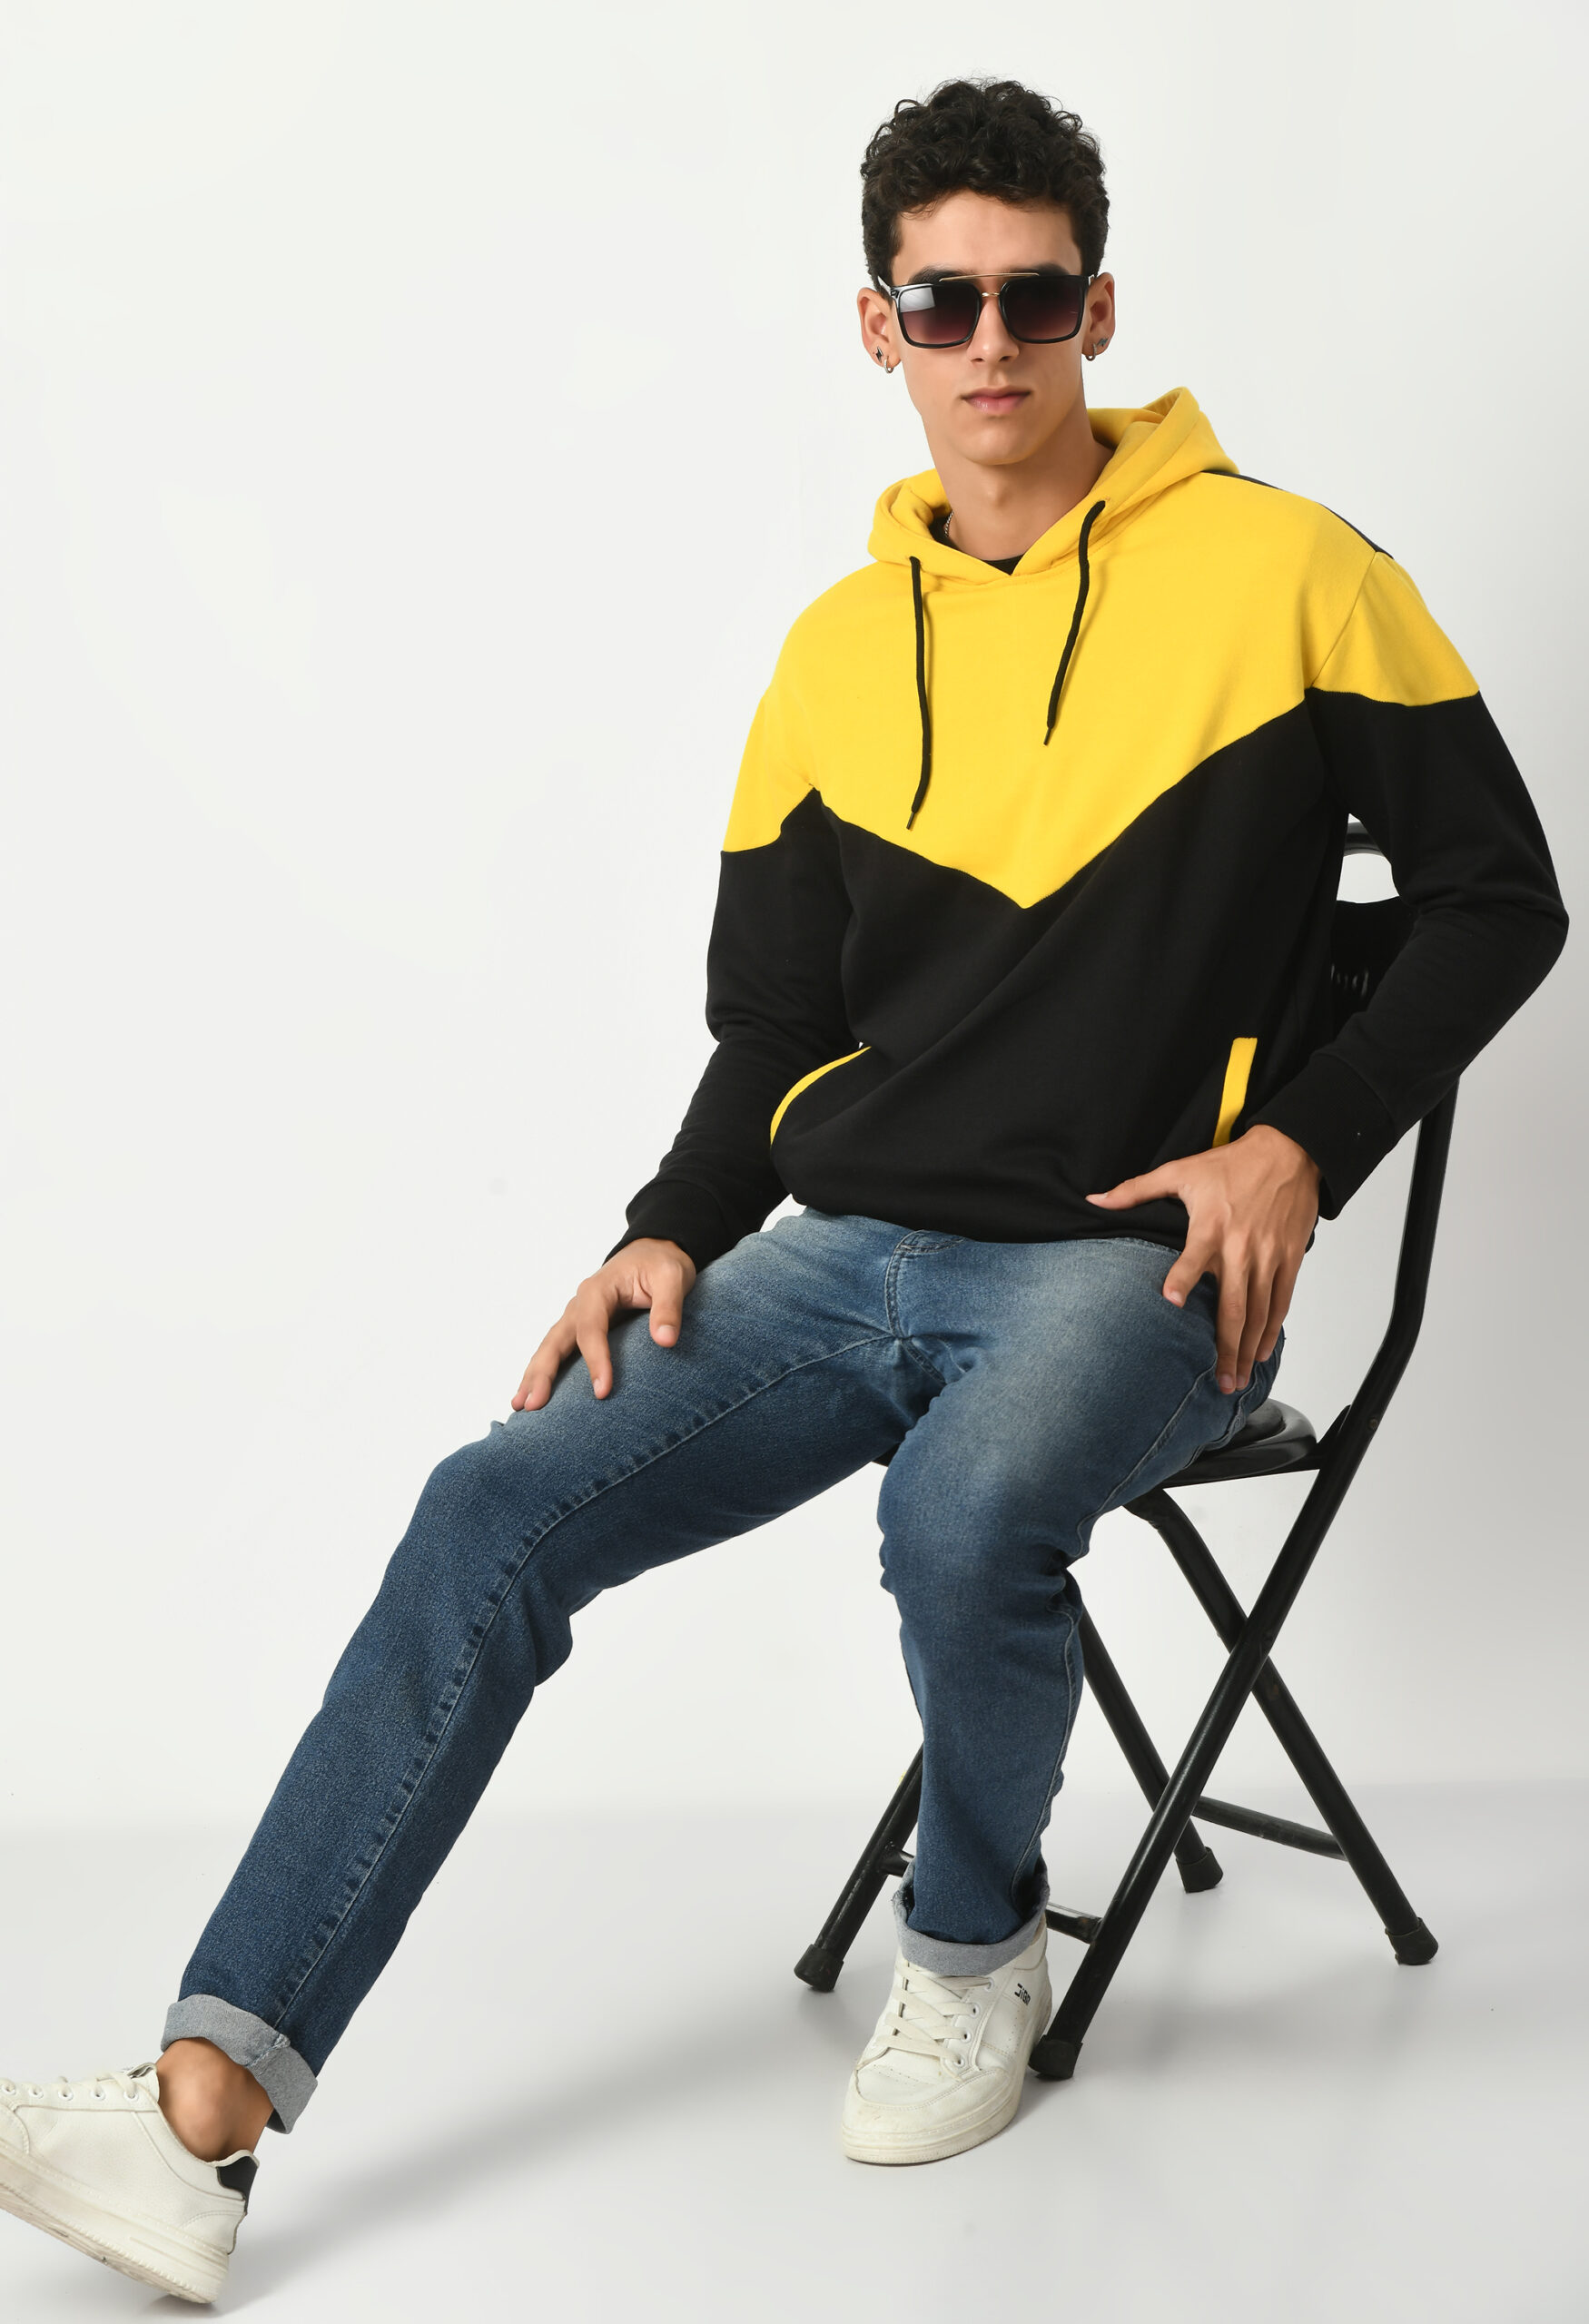 Multi Coloured Hoodies for Men - Yellow & Black V